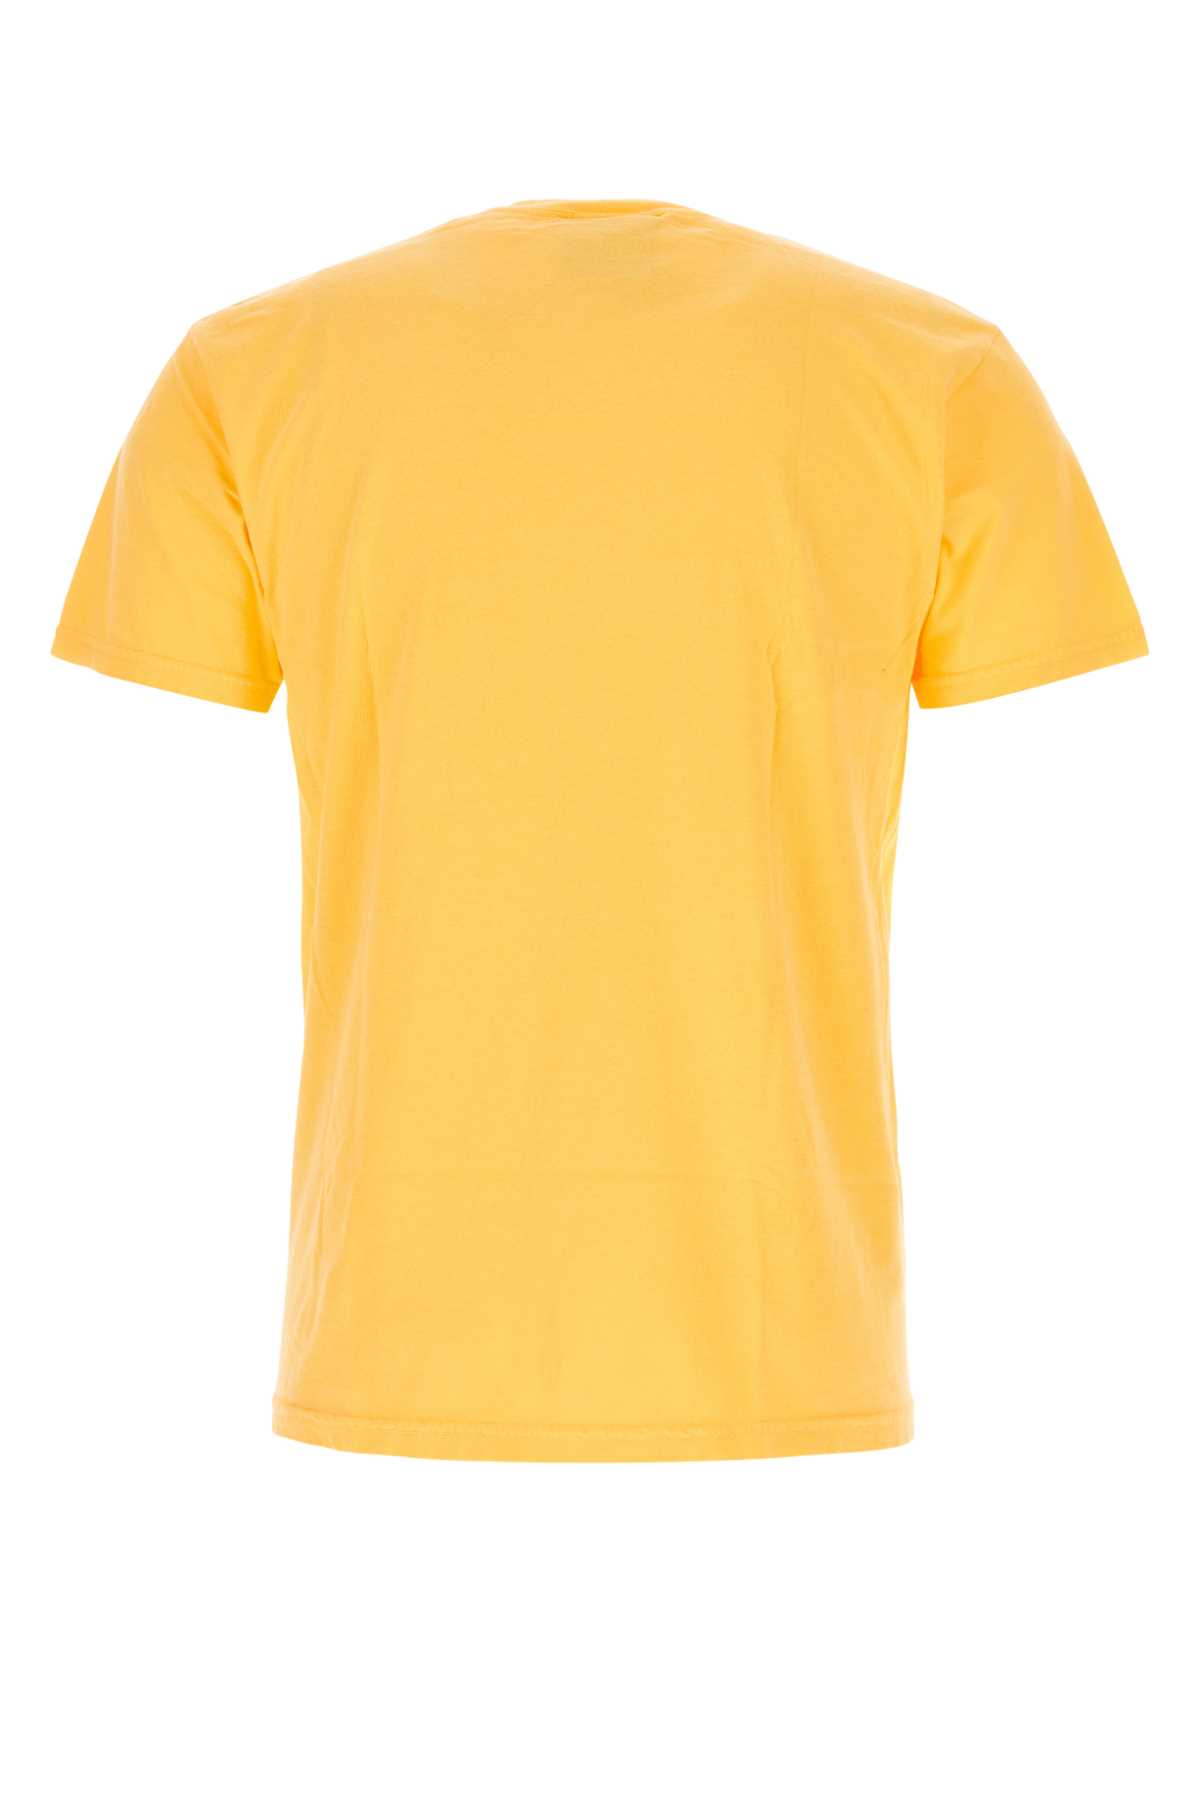 Kidsuper Yellow Cotton T-shirt In Theconartistorange